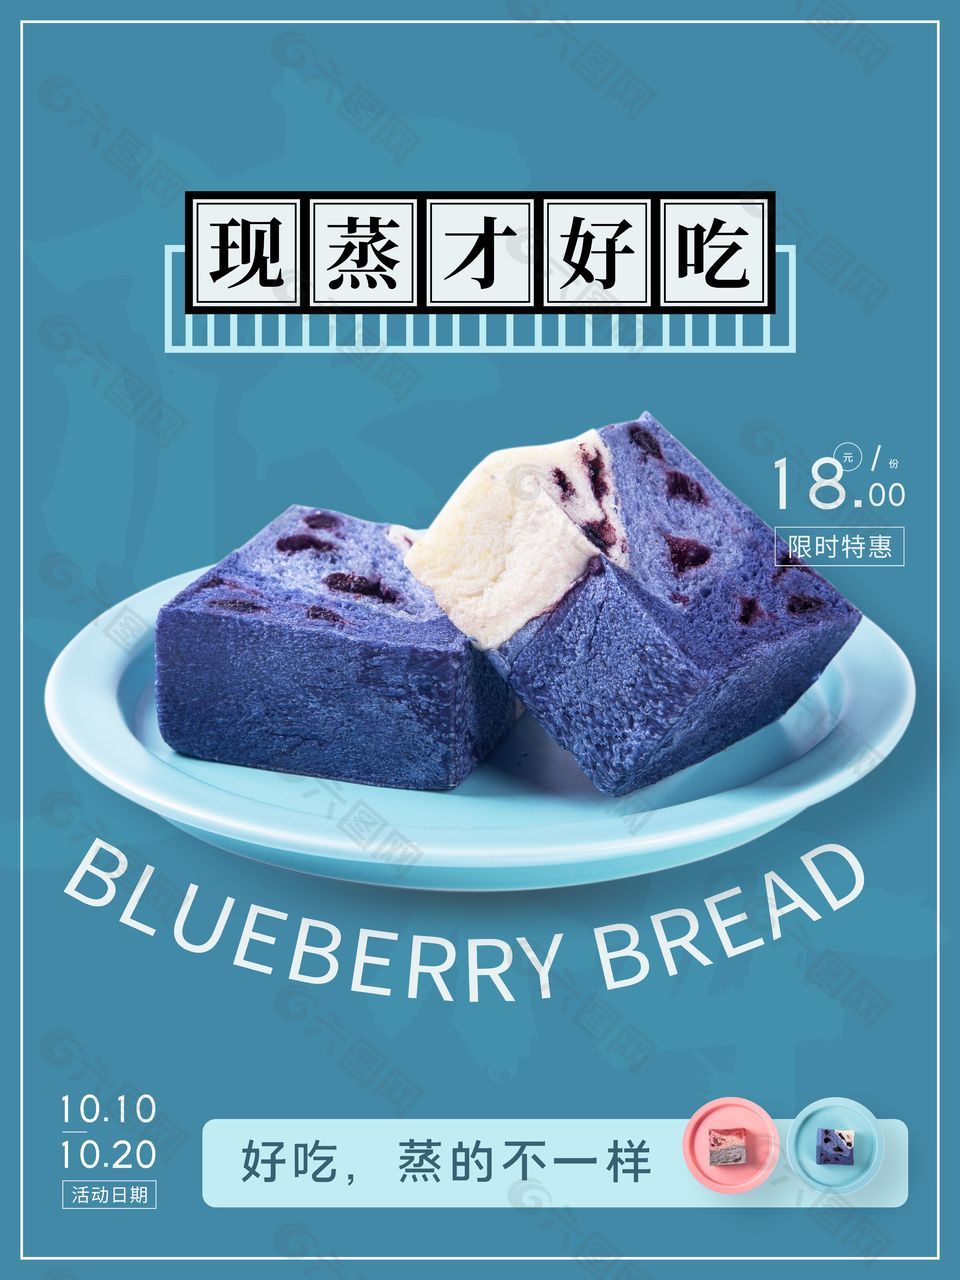 蓝色背景主题现蒸蛋糕创意海报